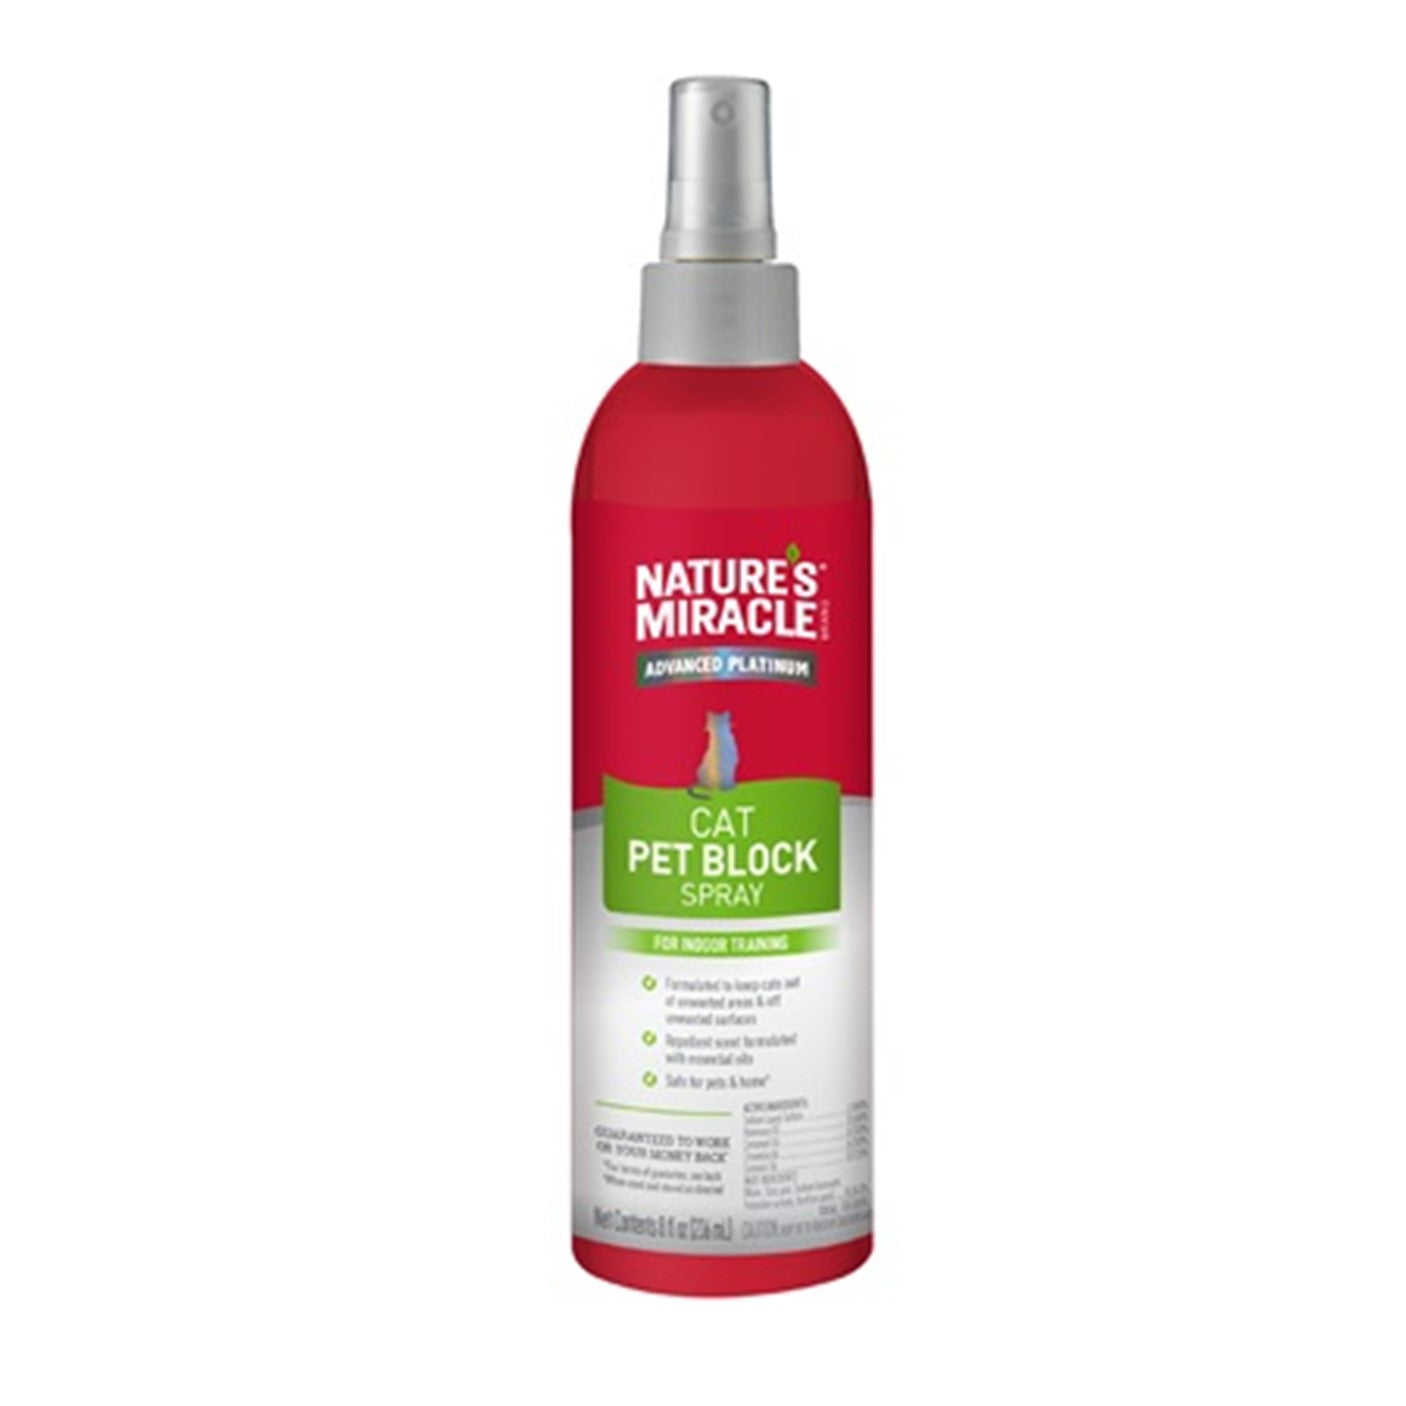 Nature's Miracle® Advanced Platinum Cat Pet Block Repellent Spray